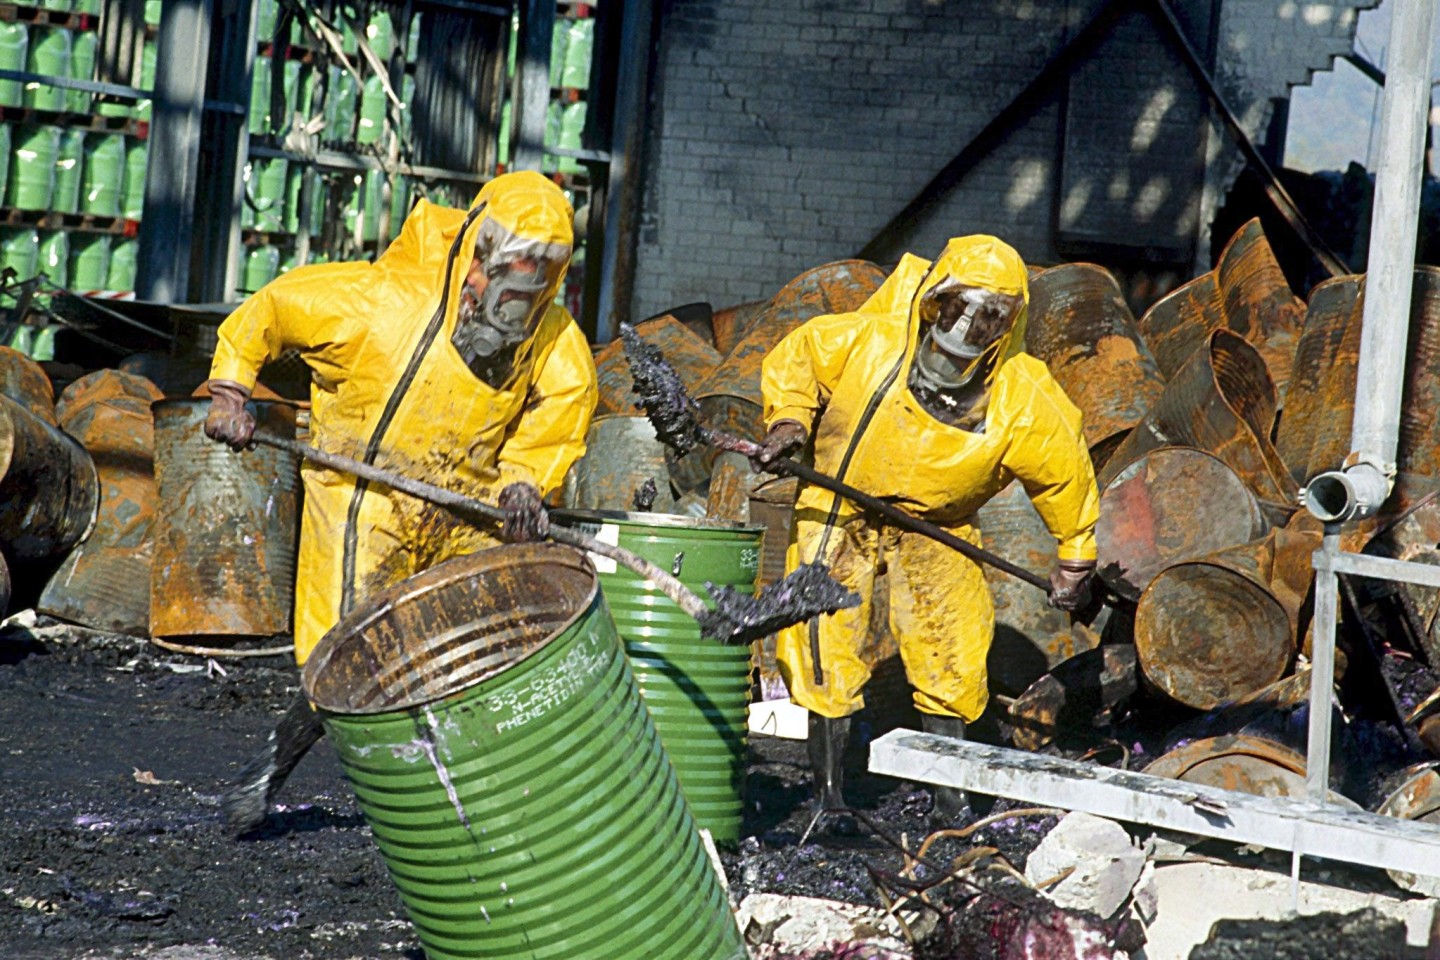 Feuerwehrleute in Schutzkleidung räumen einige Tage nach dem Brand im Chemiewerk des Schweizer Chemieunternehmens Sandoz die Trümmer auf.